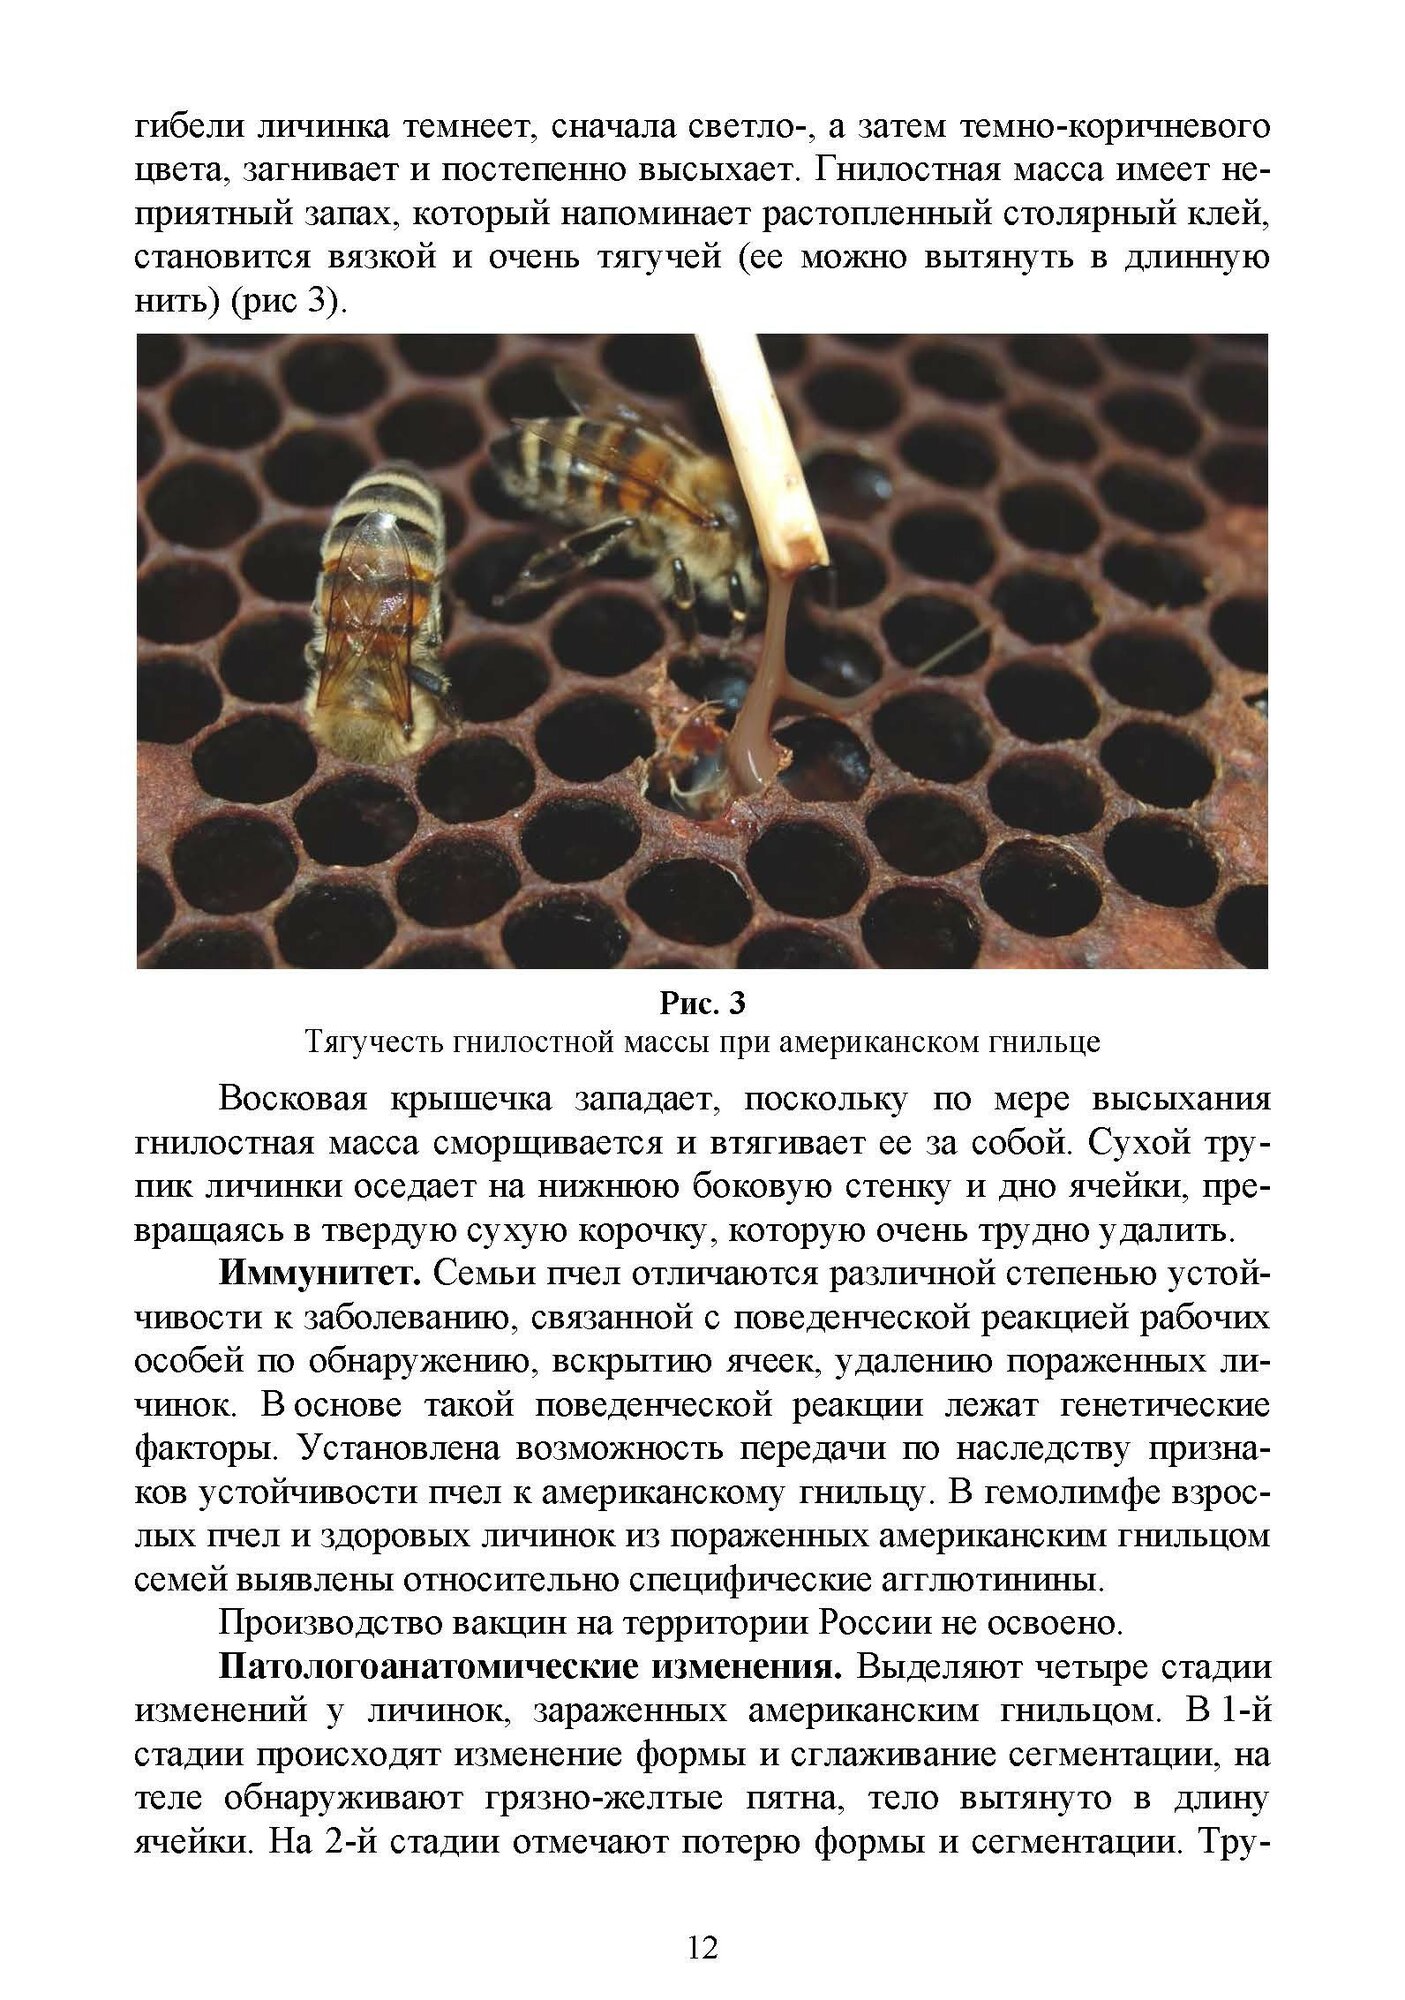 Болезни и вредители медоносных пчел - фото №6